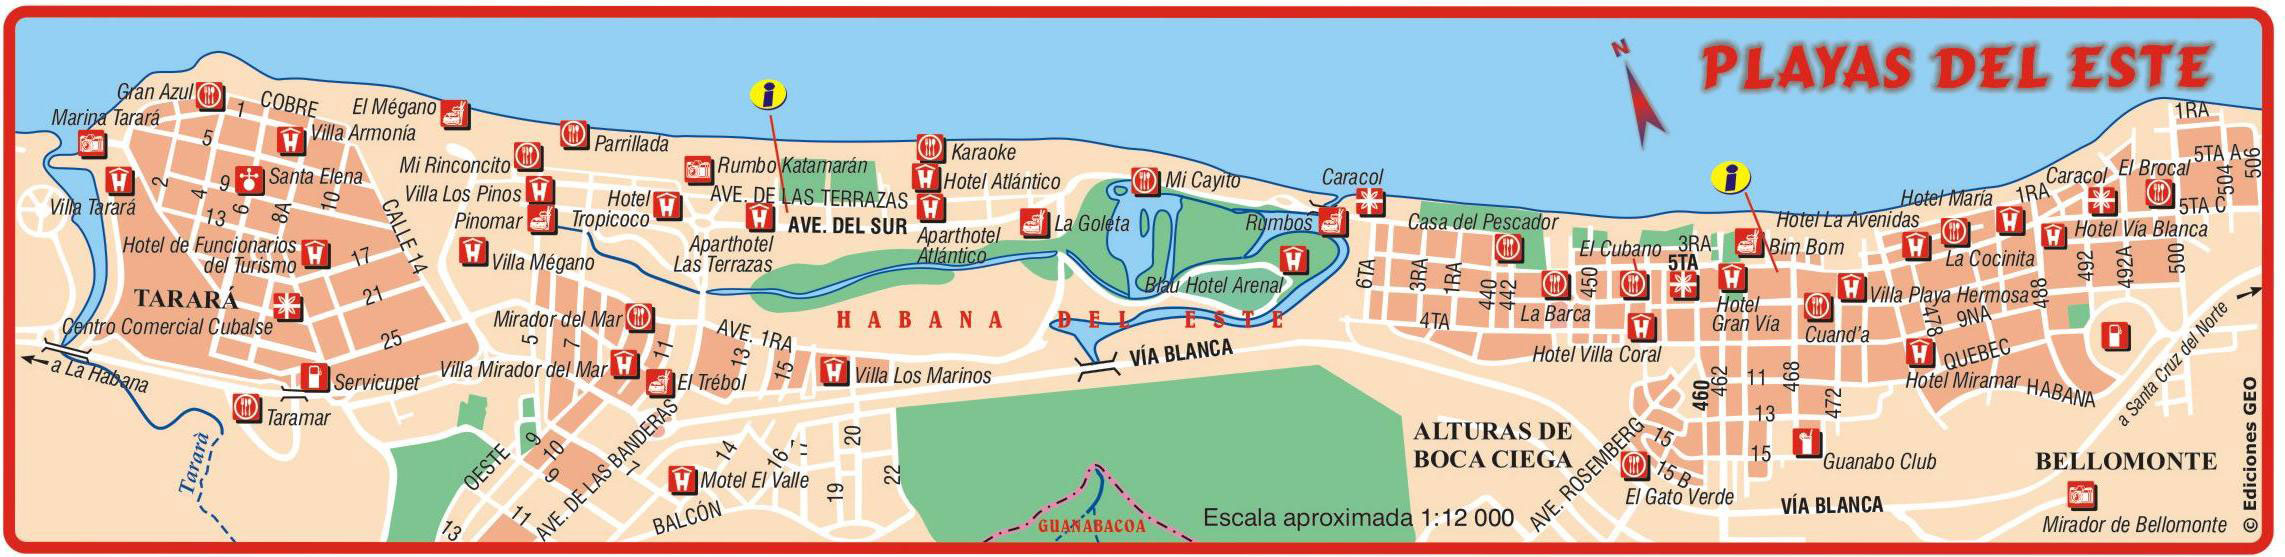 www.cubacasas.net •|• www.particuba.net ::: Playas del Este > LA TOTALE